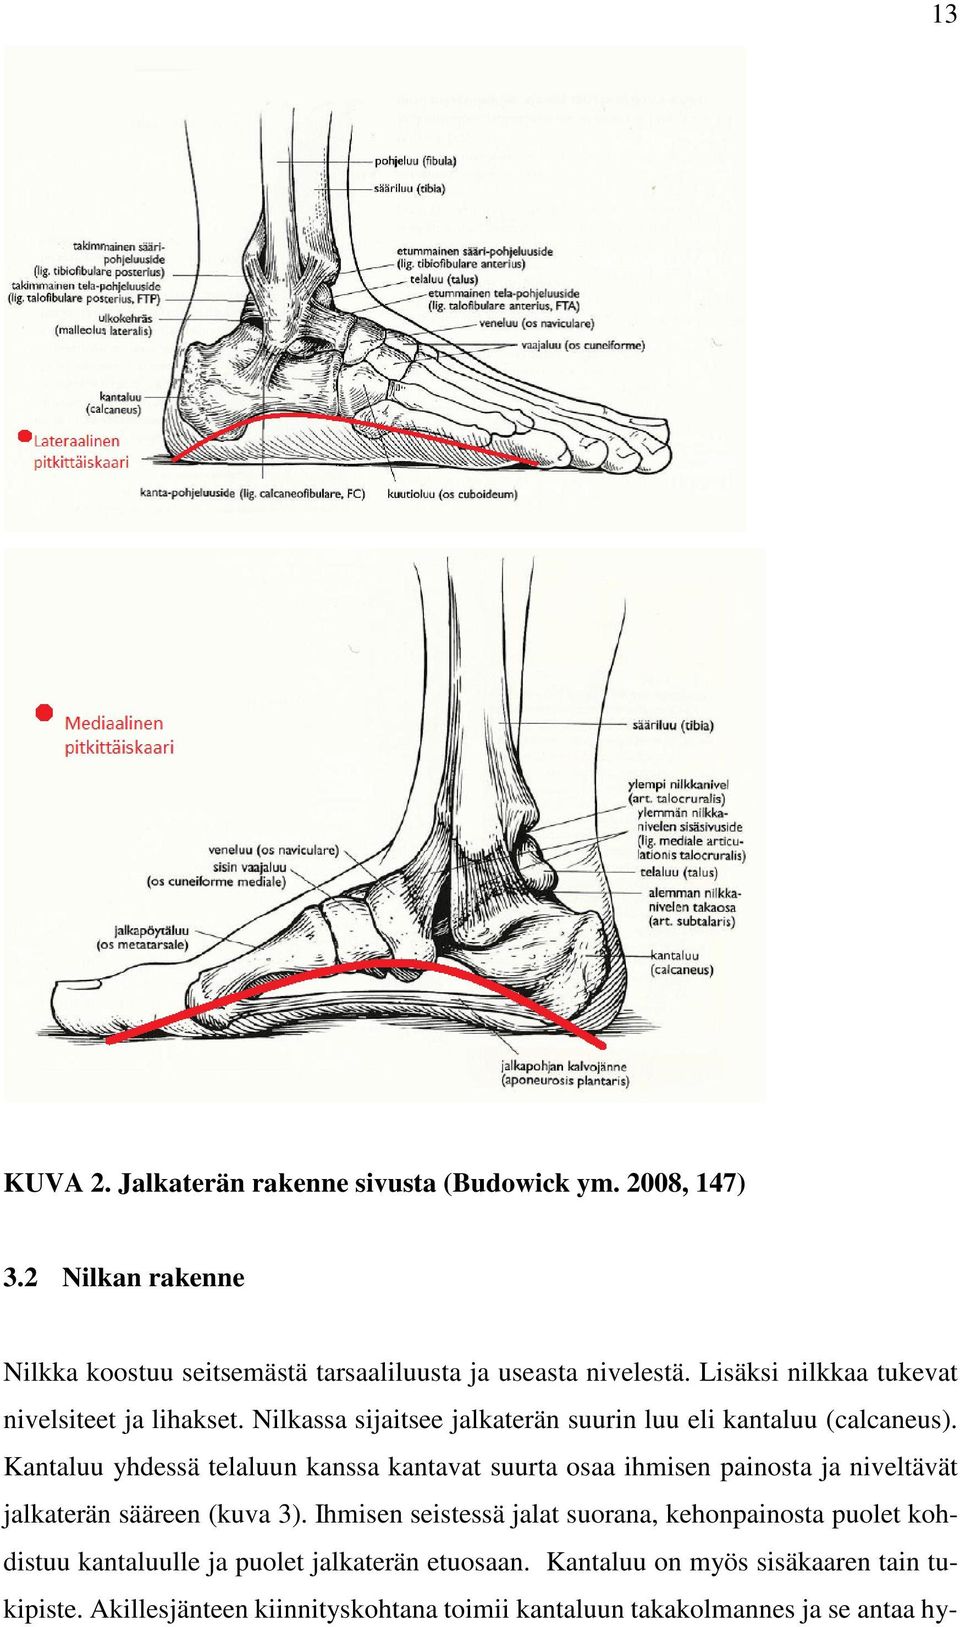 Kantaluu yhdessä telaluun kanssa kantavat suurta osaa ihmisen painosta ja niveltävät jalkaterän sääreen (kuva 3).